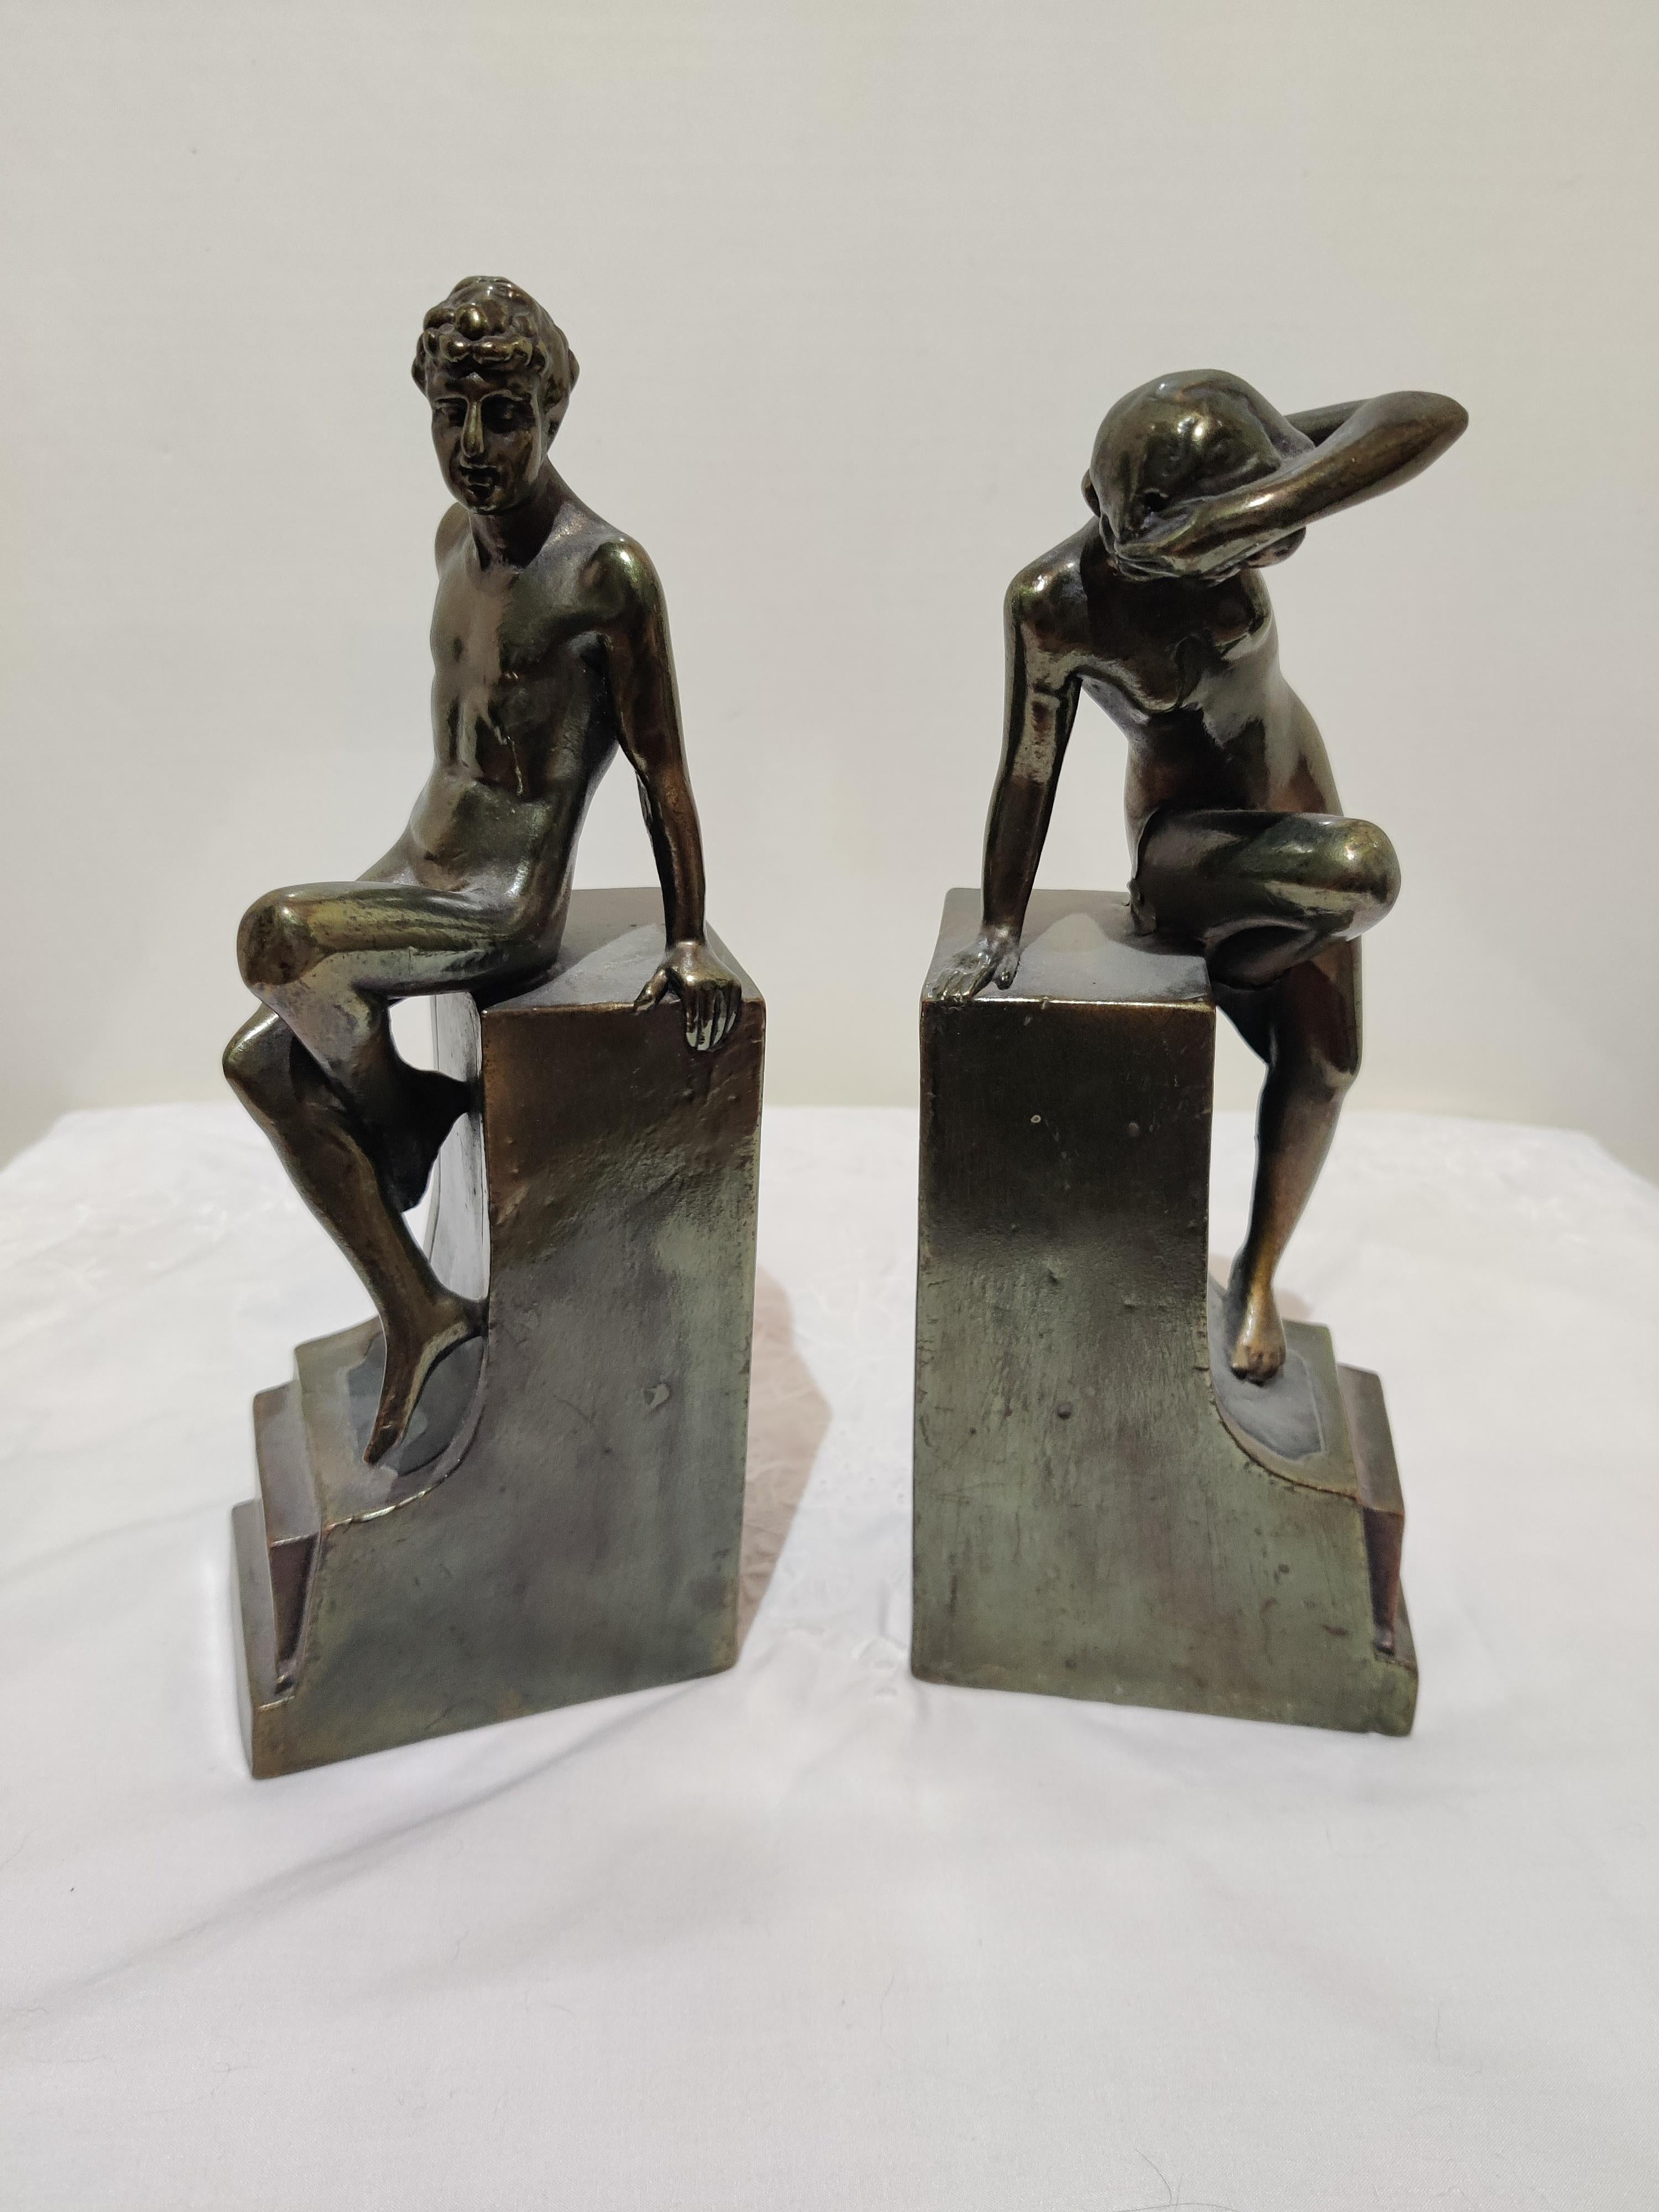 Classic Art Nude Bronze Buchstützen
Frühes 20. Jahrhundert Jugendstil